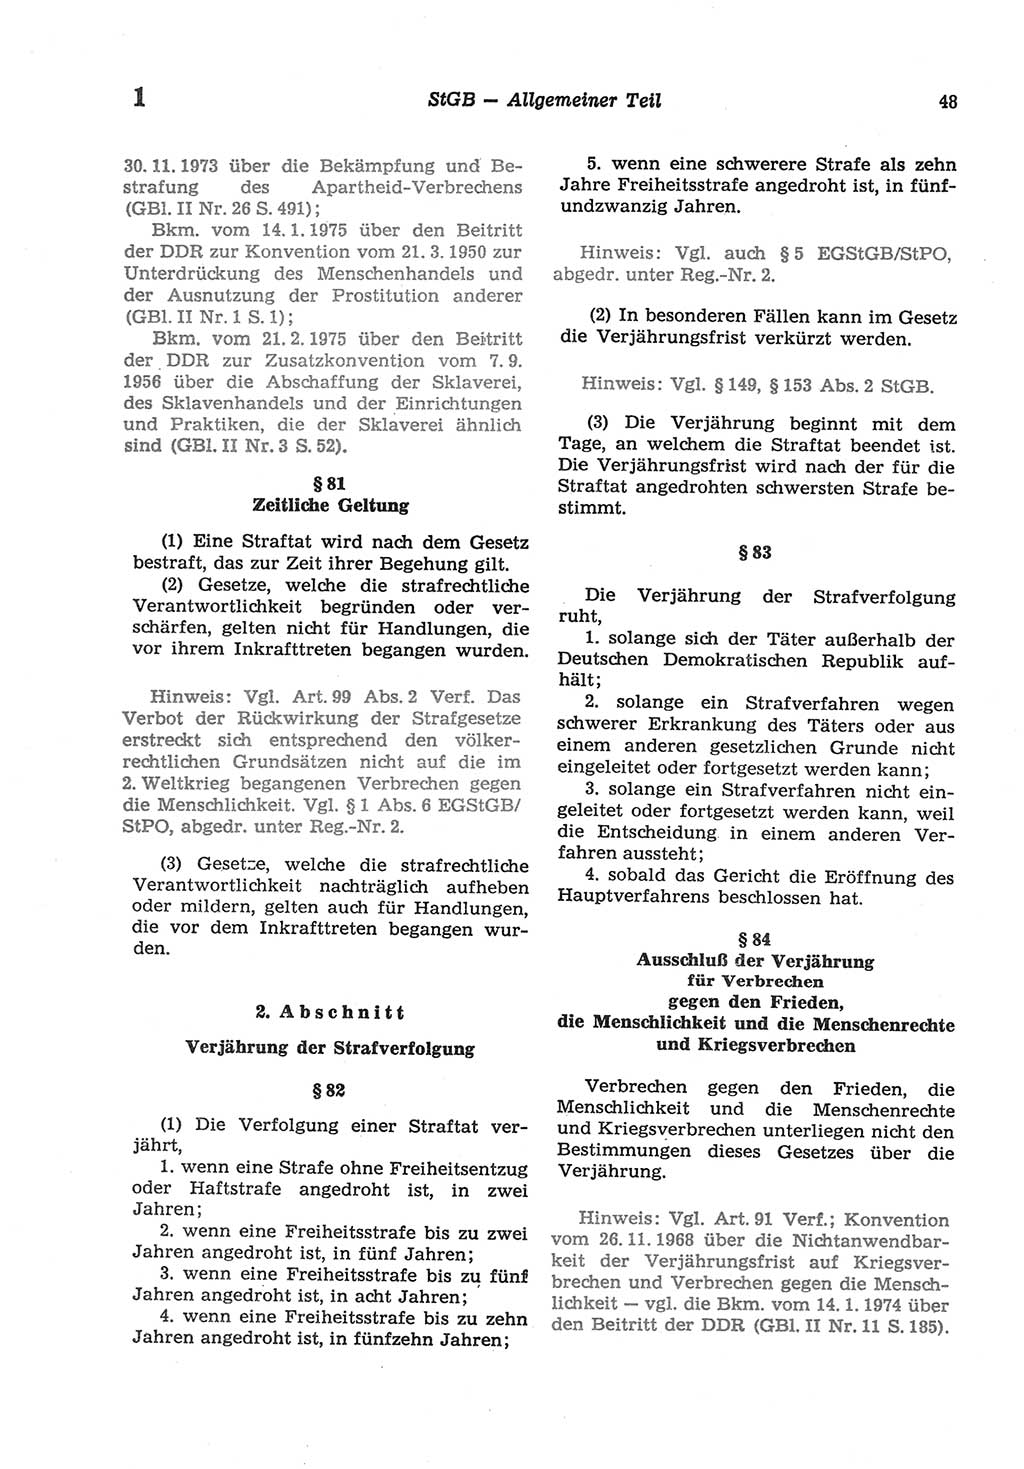 Strafgesetzbuch (StGB) der Deutschen Demokratischen Republik (DDR) und angrenzende Gesetze und Bestimmungen 1977, Seite 48 (StGB DDR Ges. Best. 1977, S. 48)